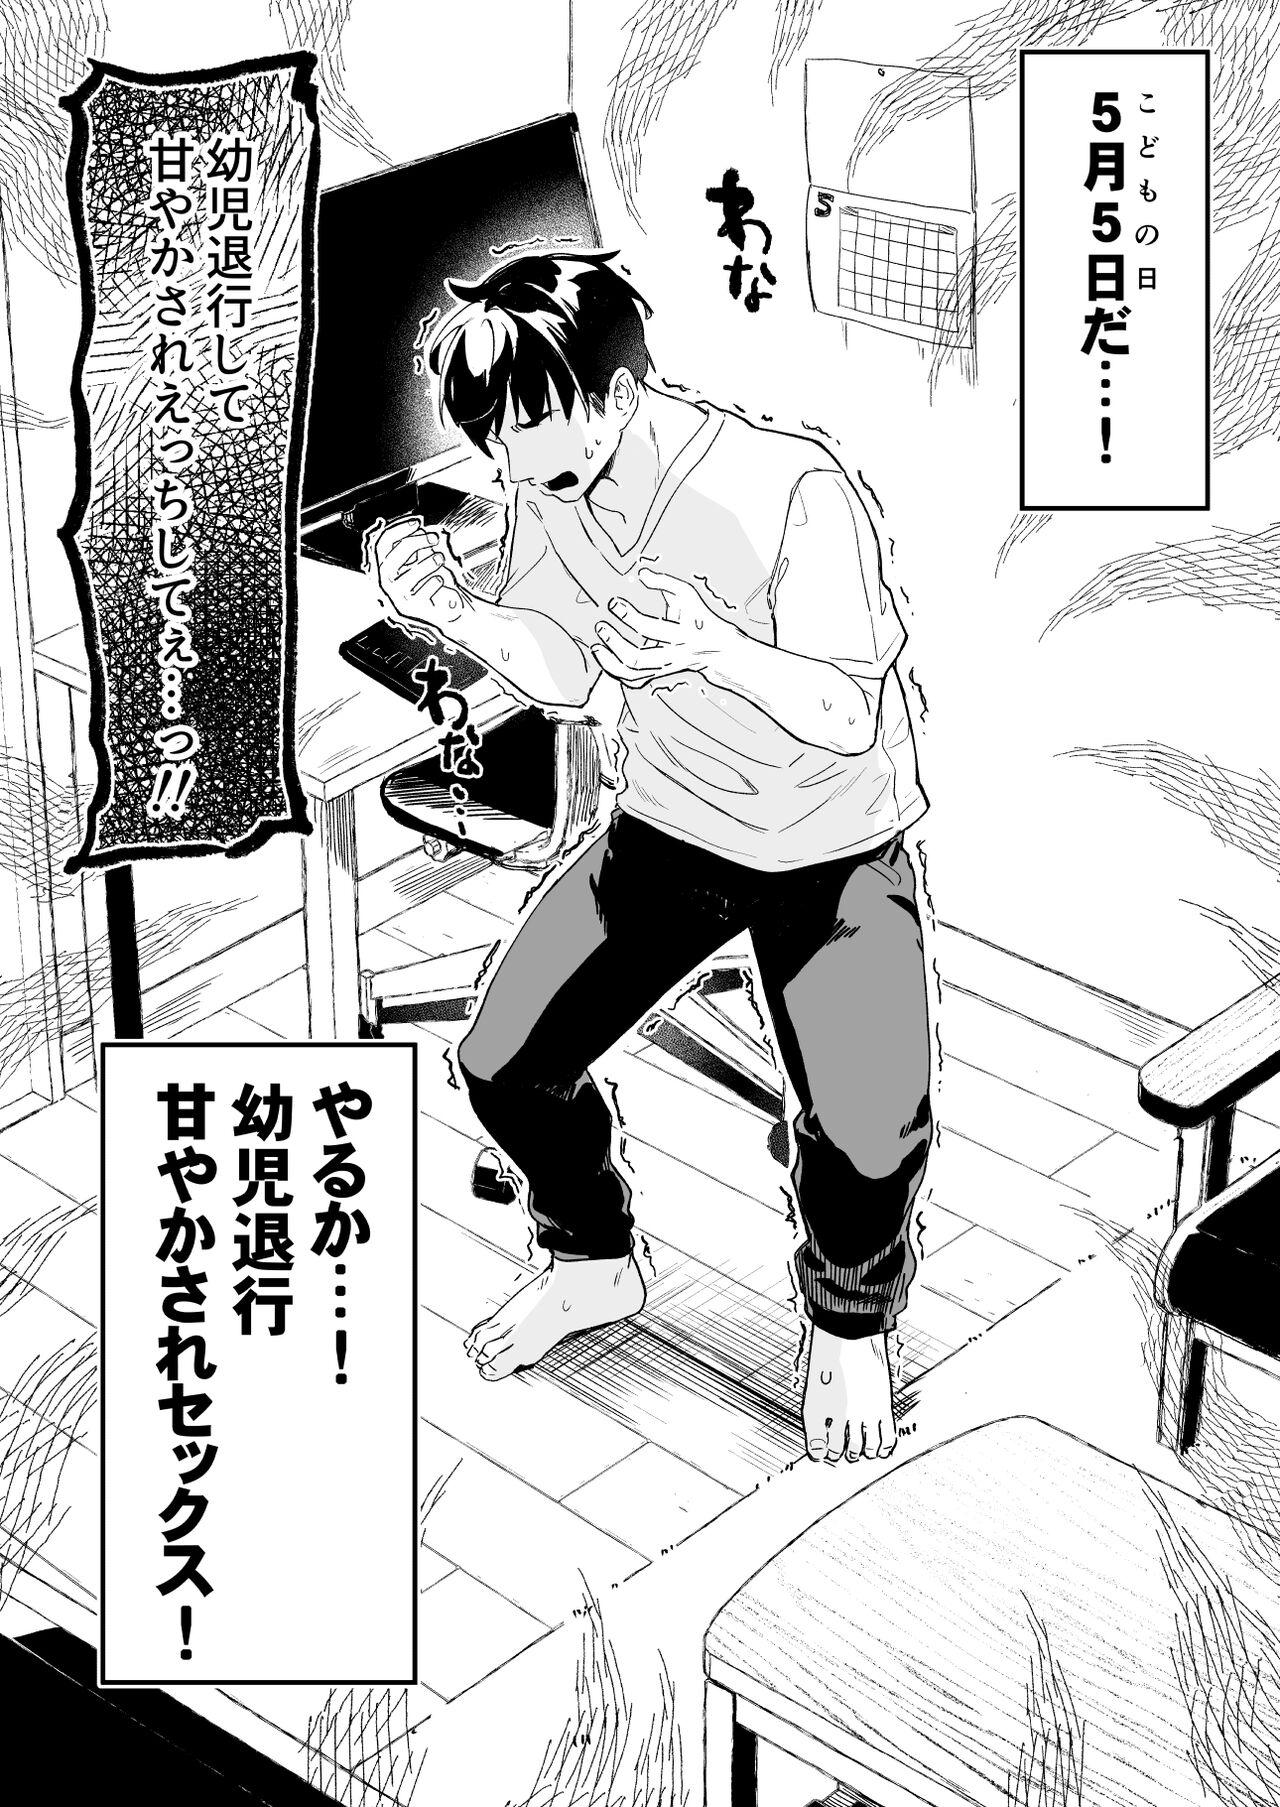 Star [Tamano Kedama] Kodomo no Hi (Imishin) ni Mukete Manga o Kaku - Original Twinks - Page 3